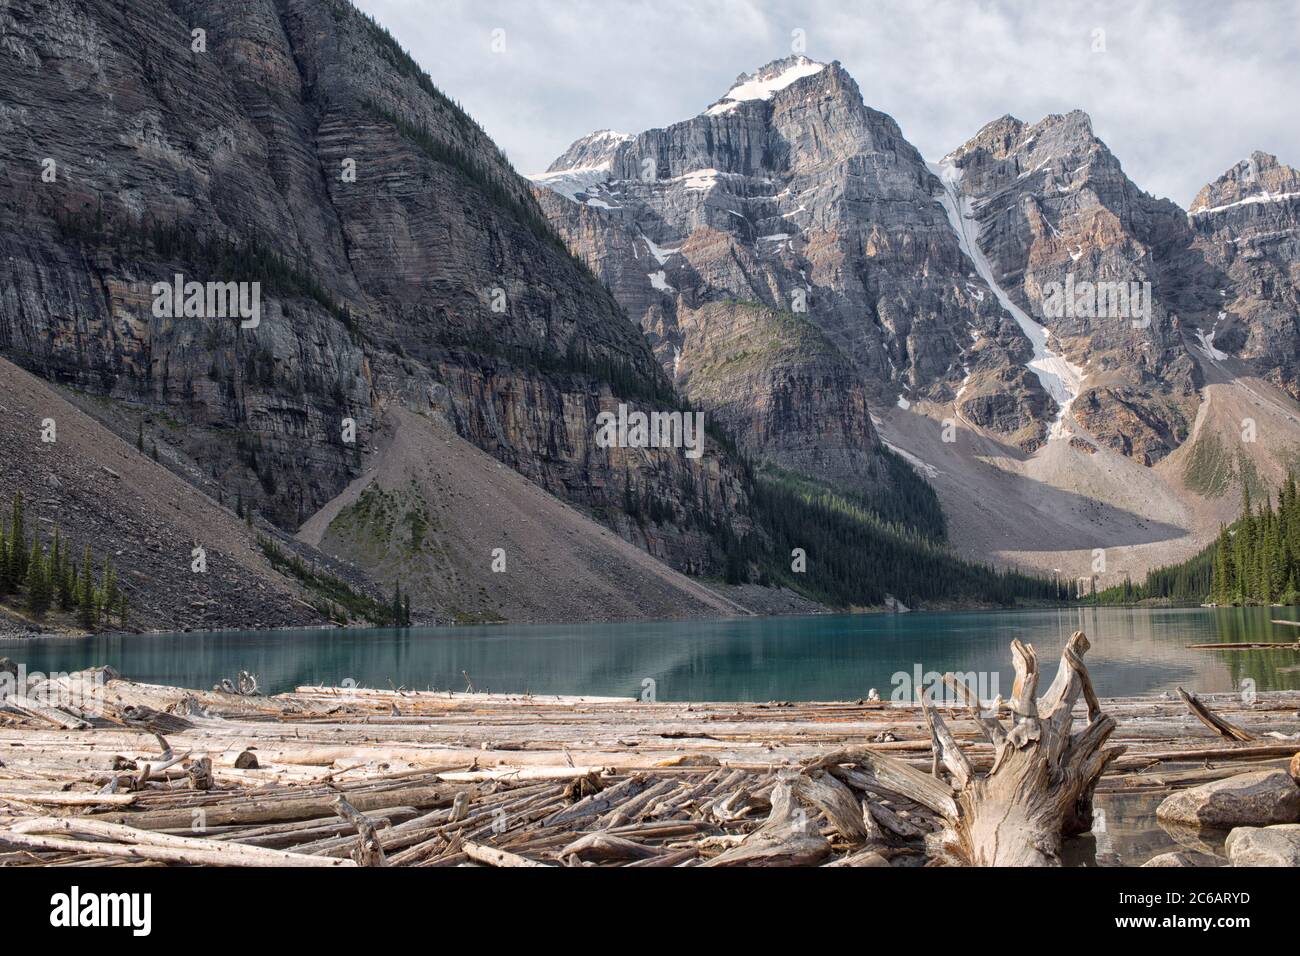 Grumes à l'entrée du parc national du lac Moraine Banff, Alberta, Canada Banque D'Images